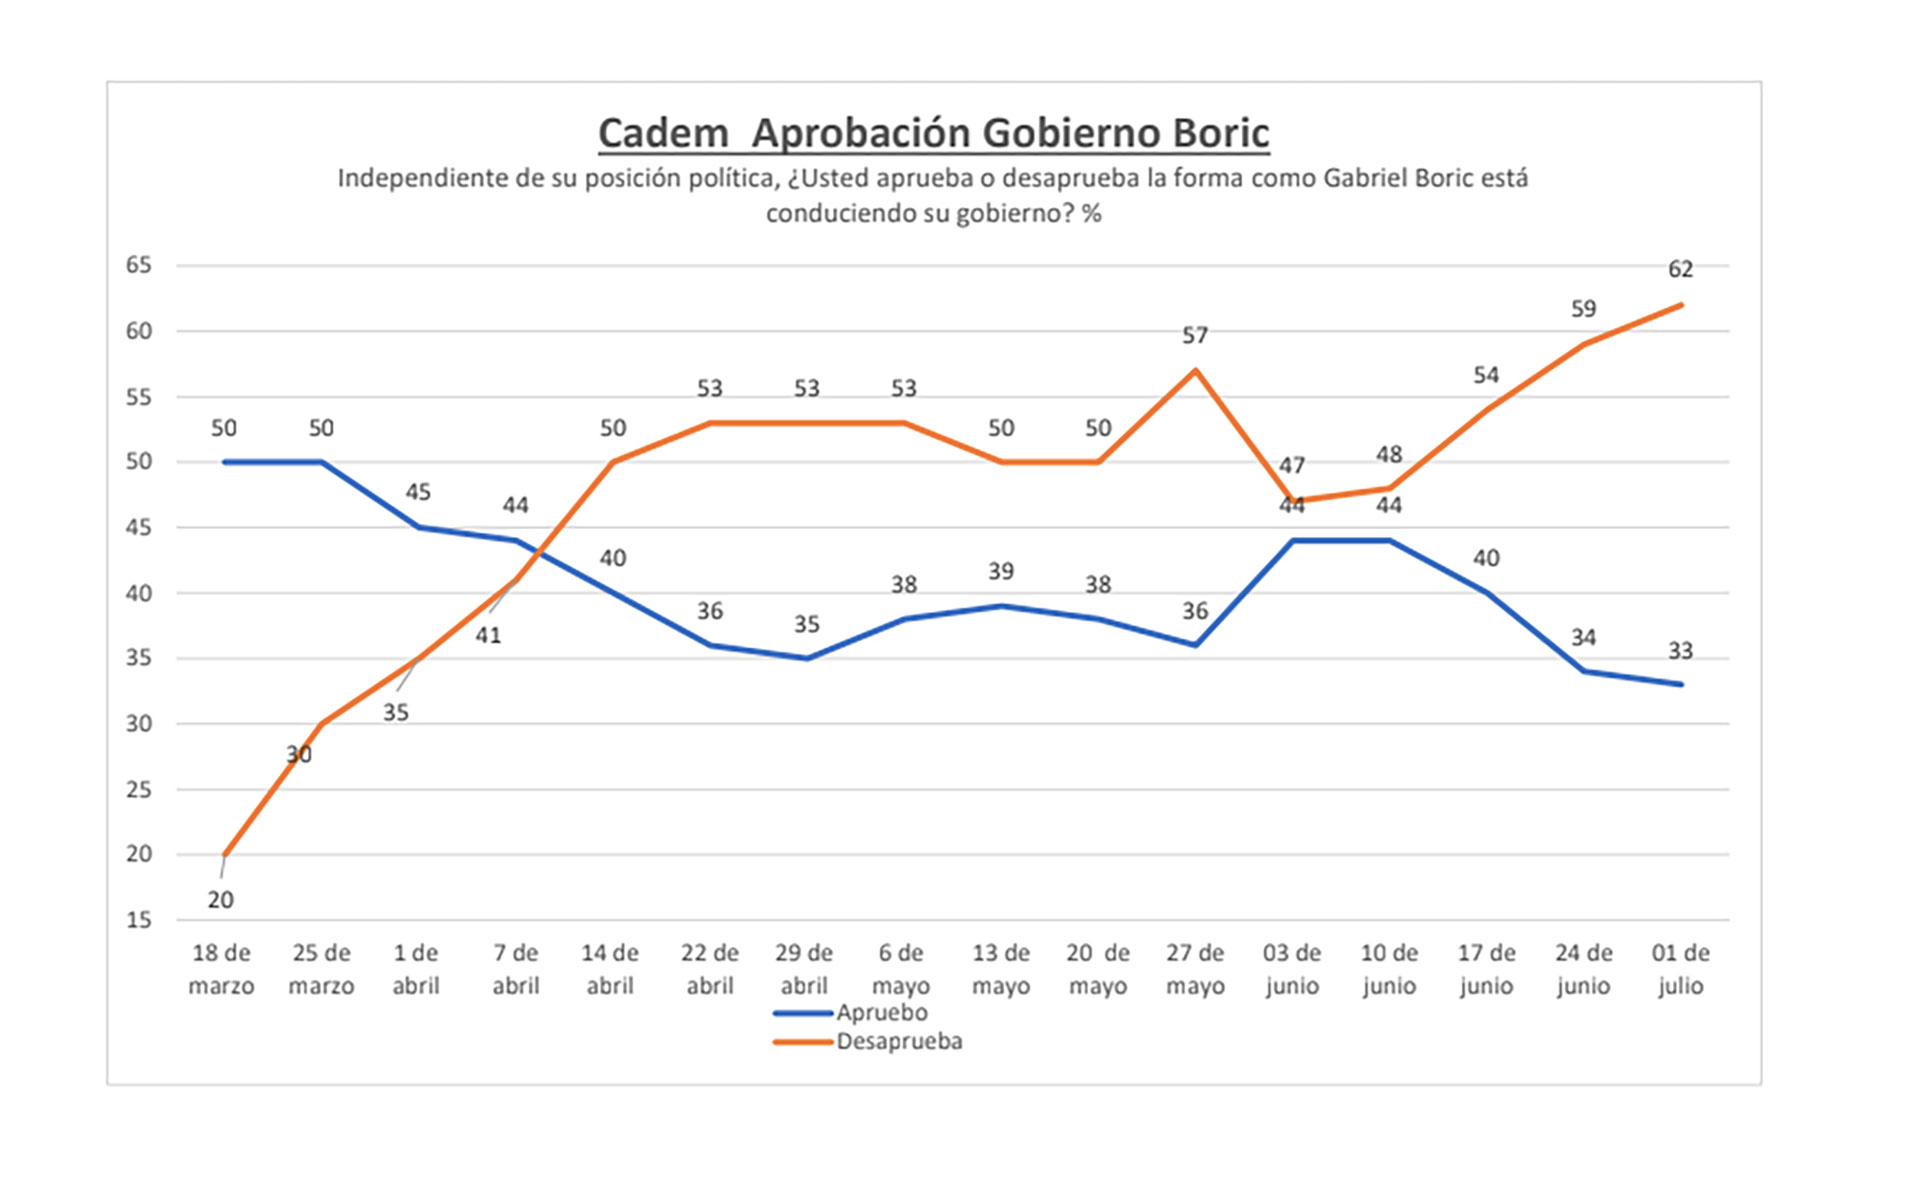 Resultados de la encuesta Cadem Plaza Pública sobre la aprobación y desaprobación del gobierno de Gabriel Boric.